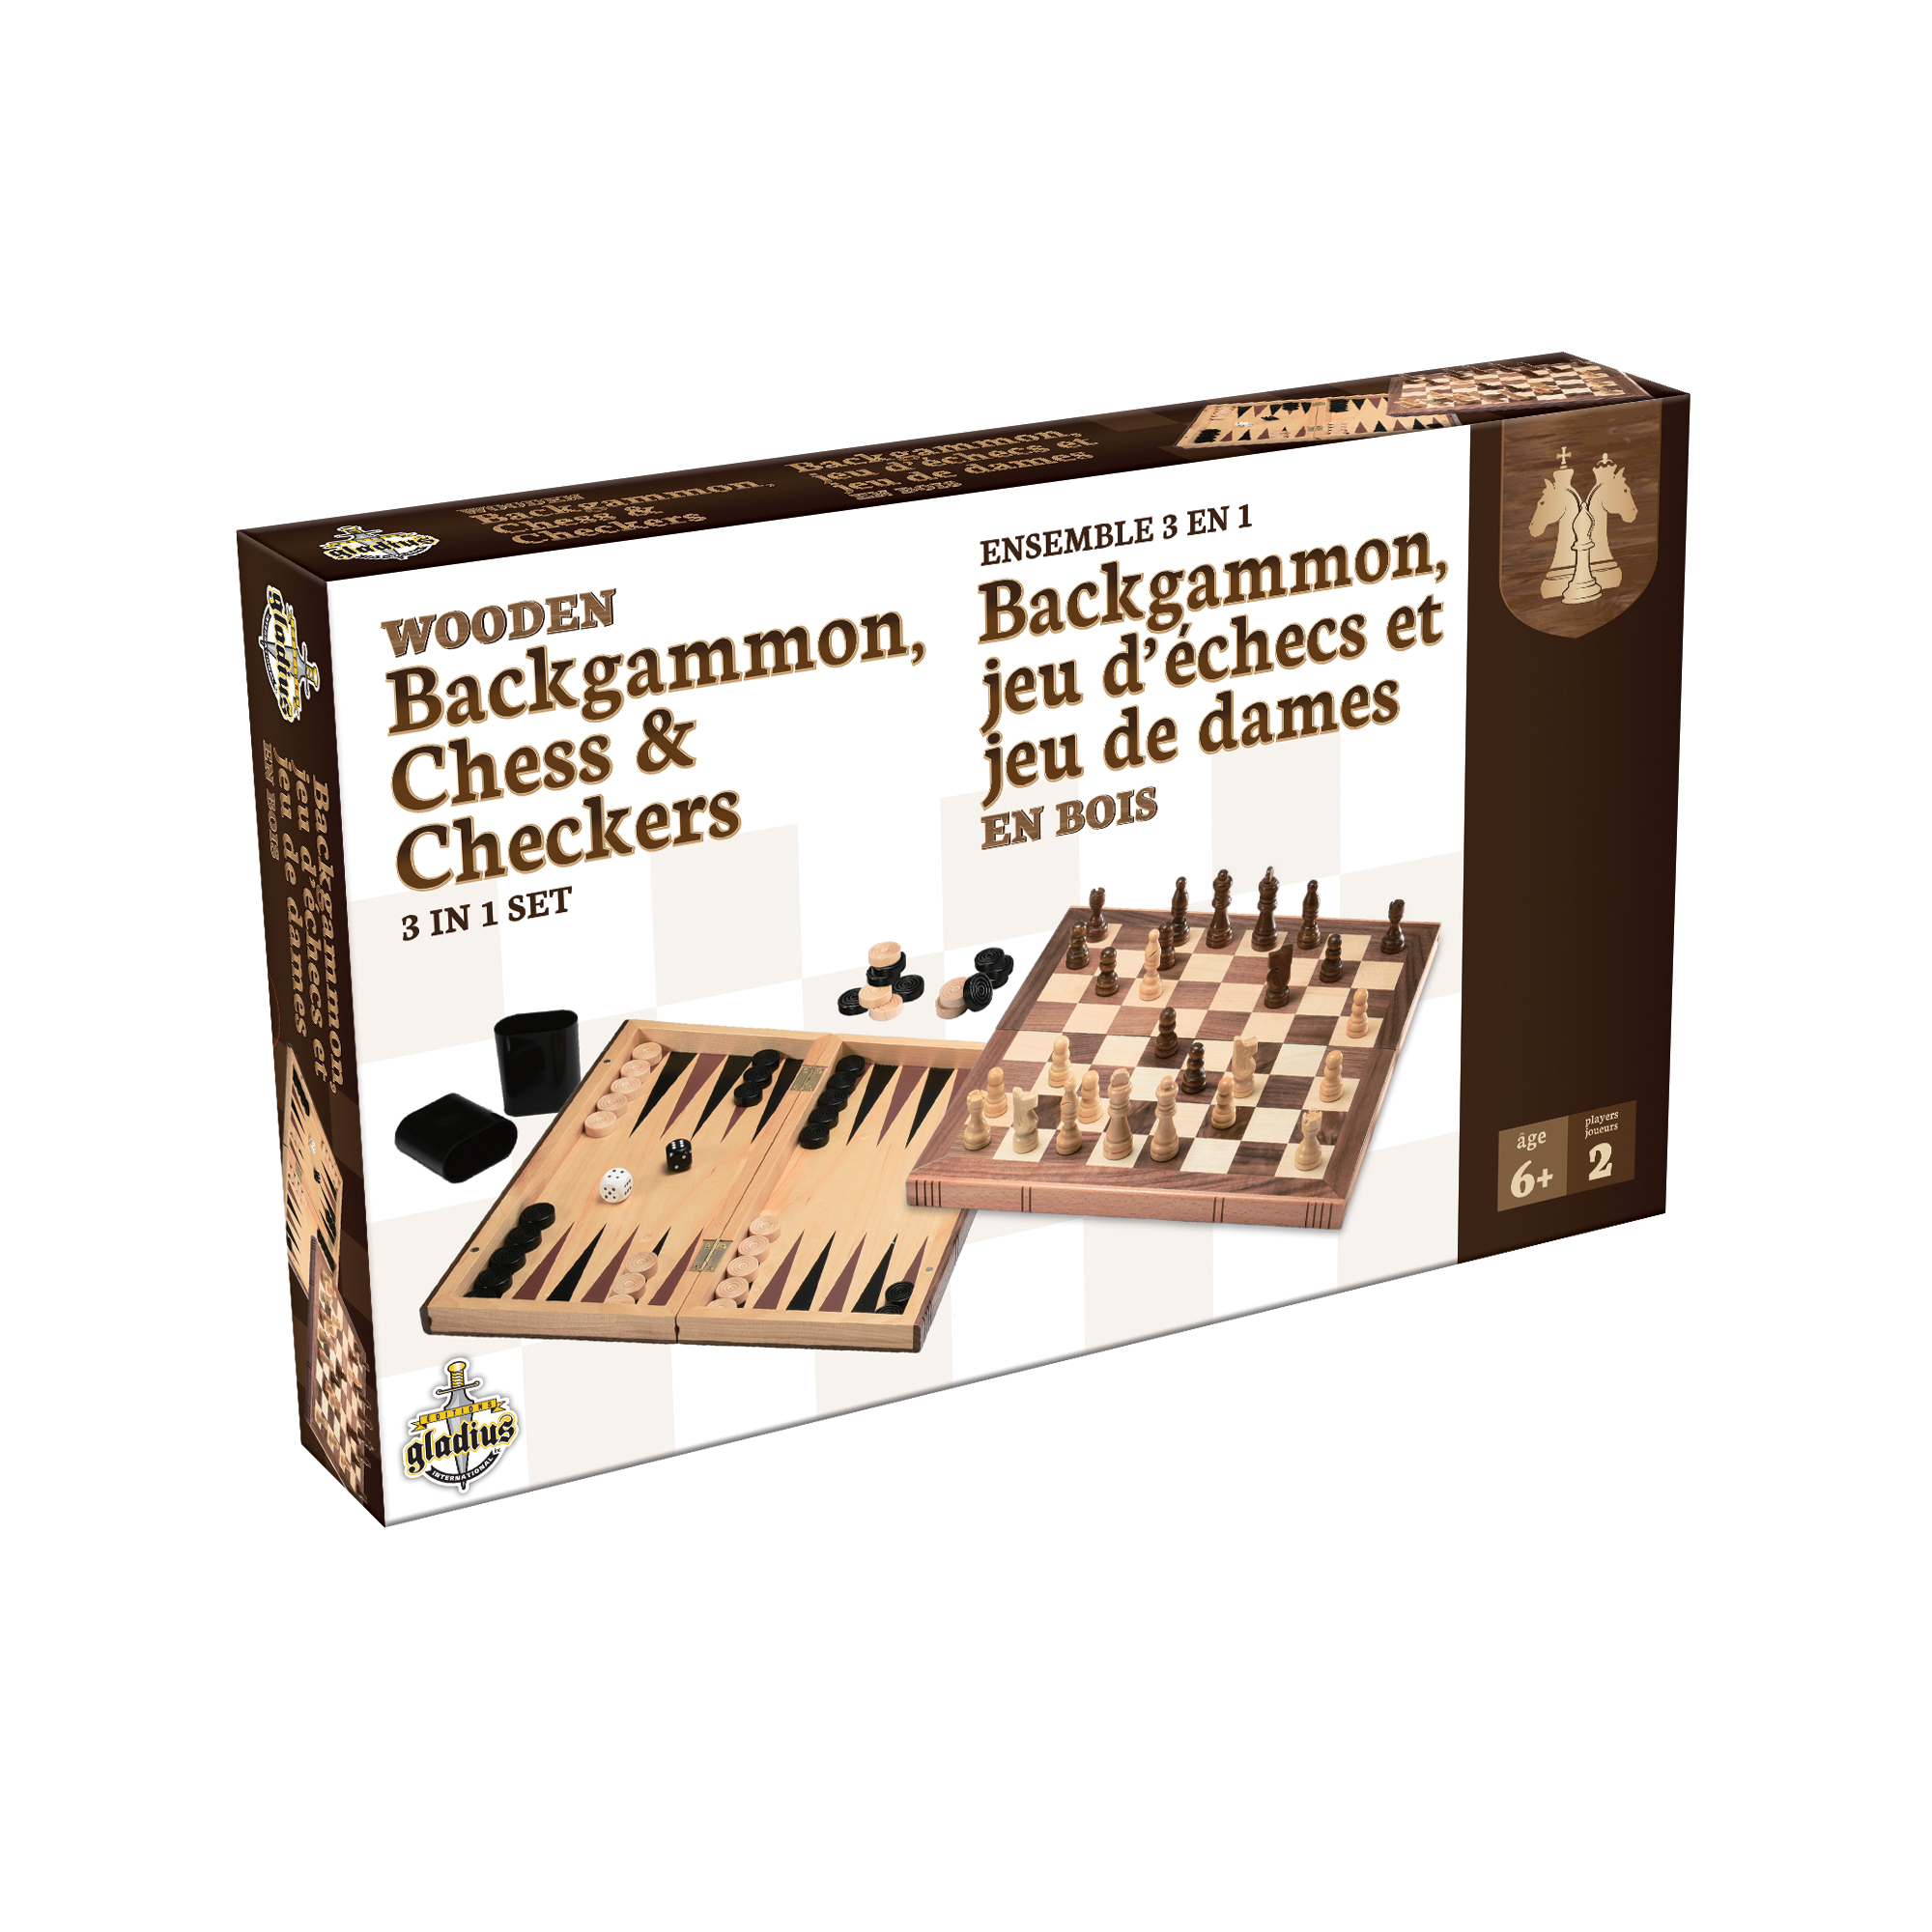 Dames de Backgammon de Jeu déchecs de Luxe N/T Jeu déchecs en Bois 3 en 1 Ensemble de Jeu déchecs Pliable Portable de Voyage